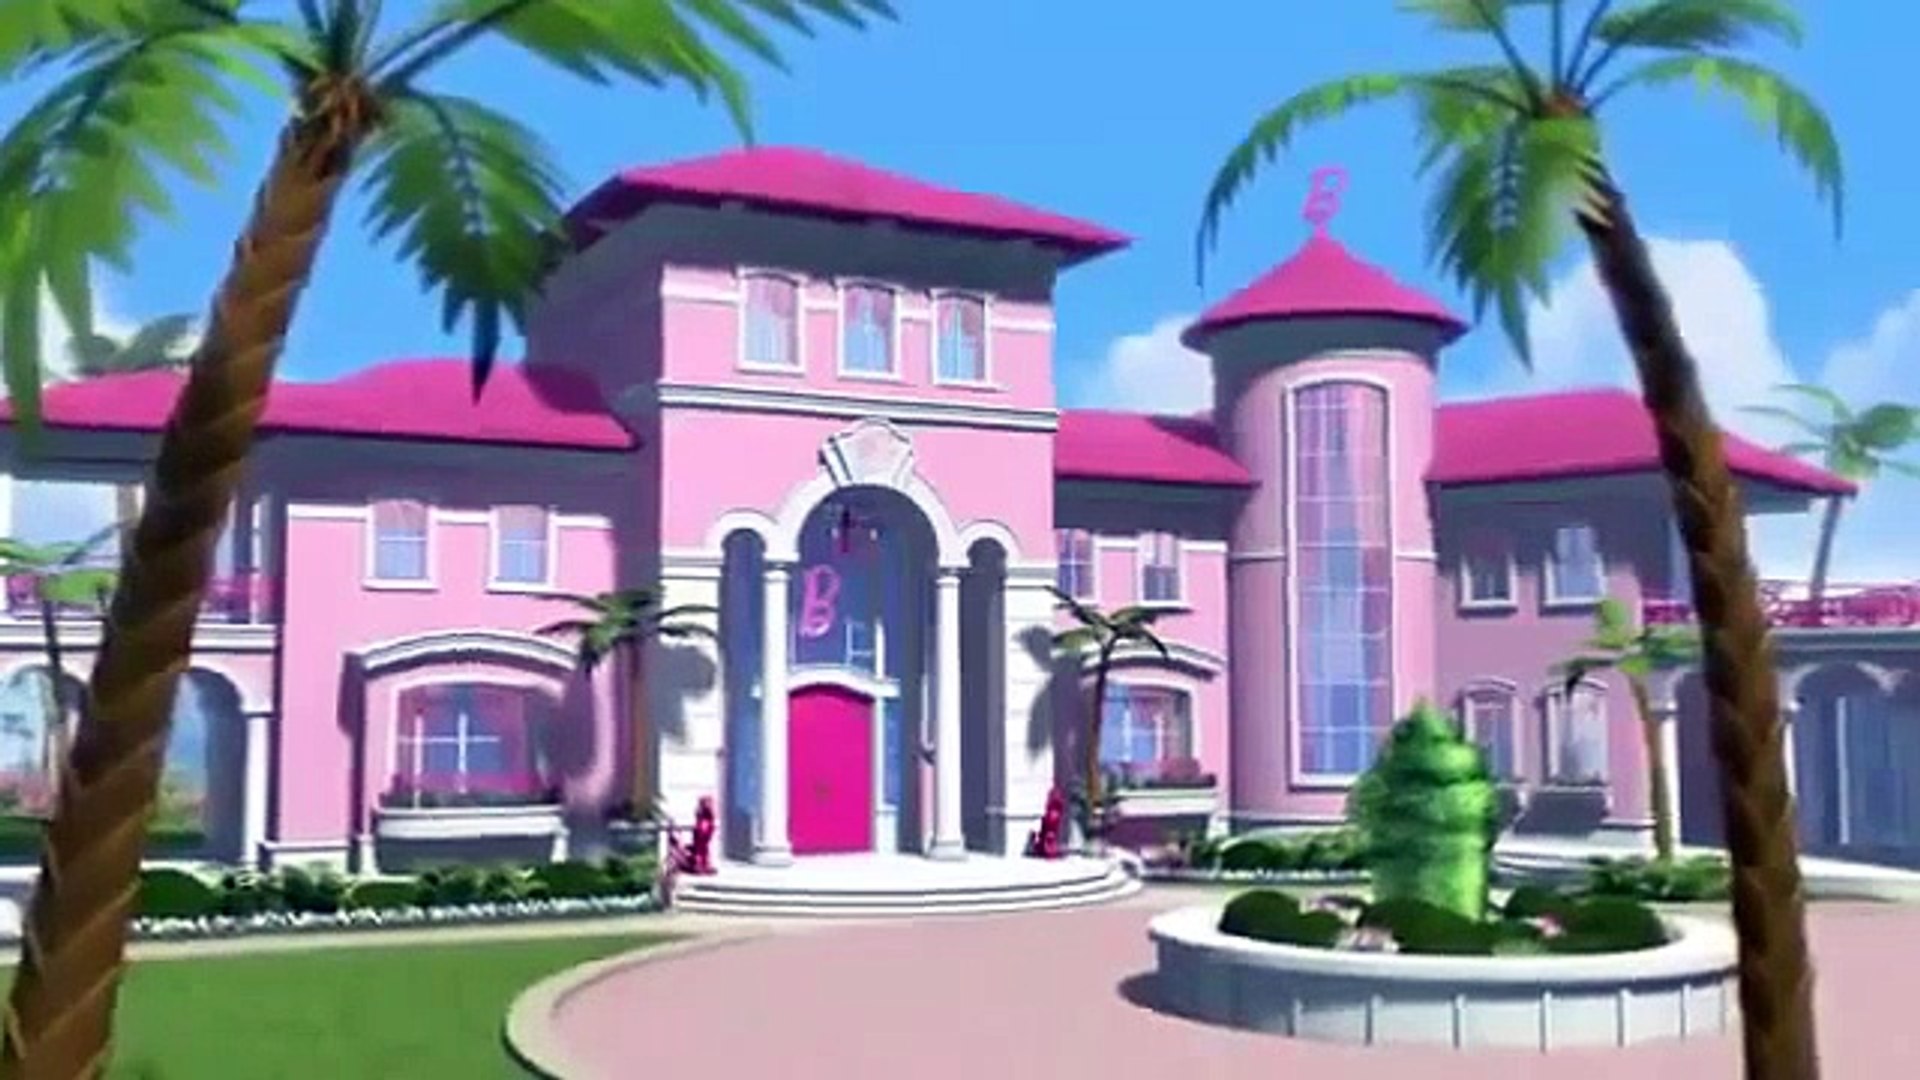 barbie dream house cartoon